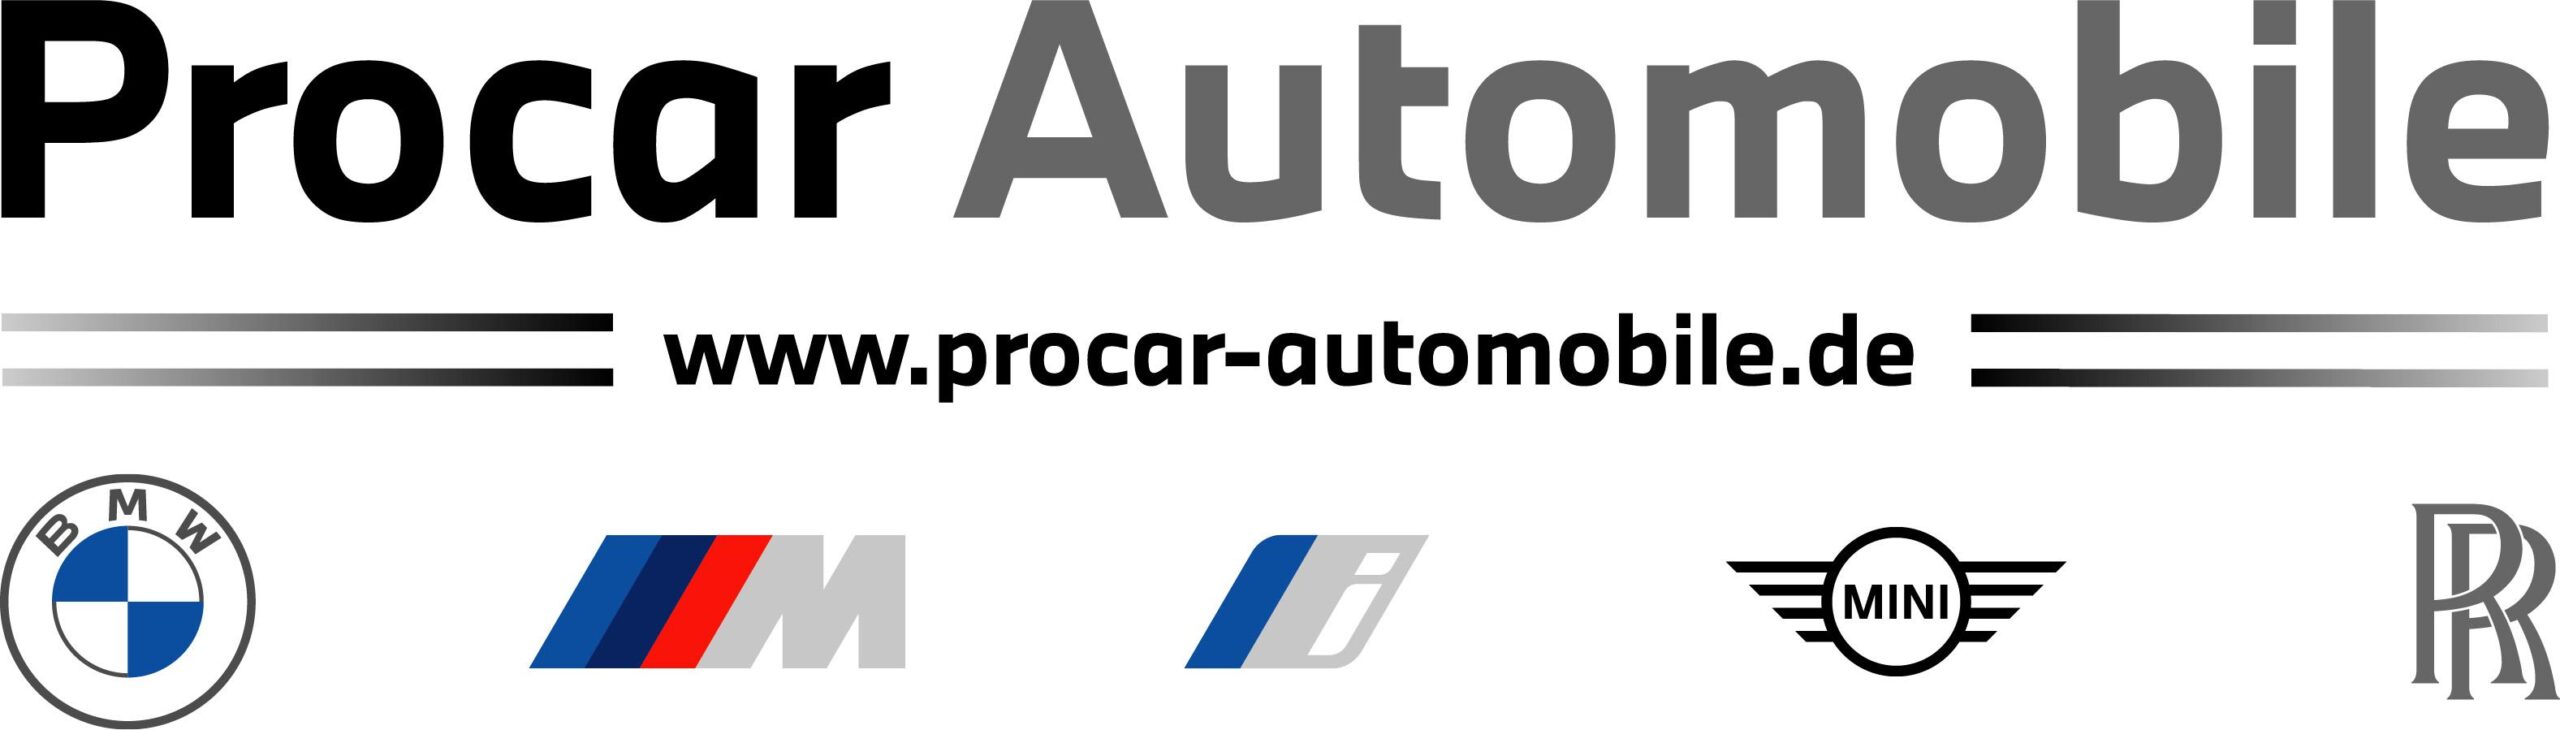 Procar Automobile